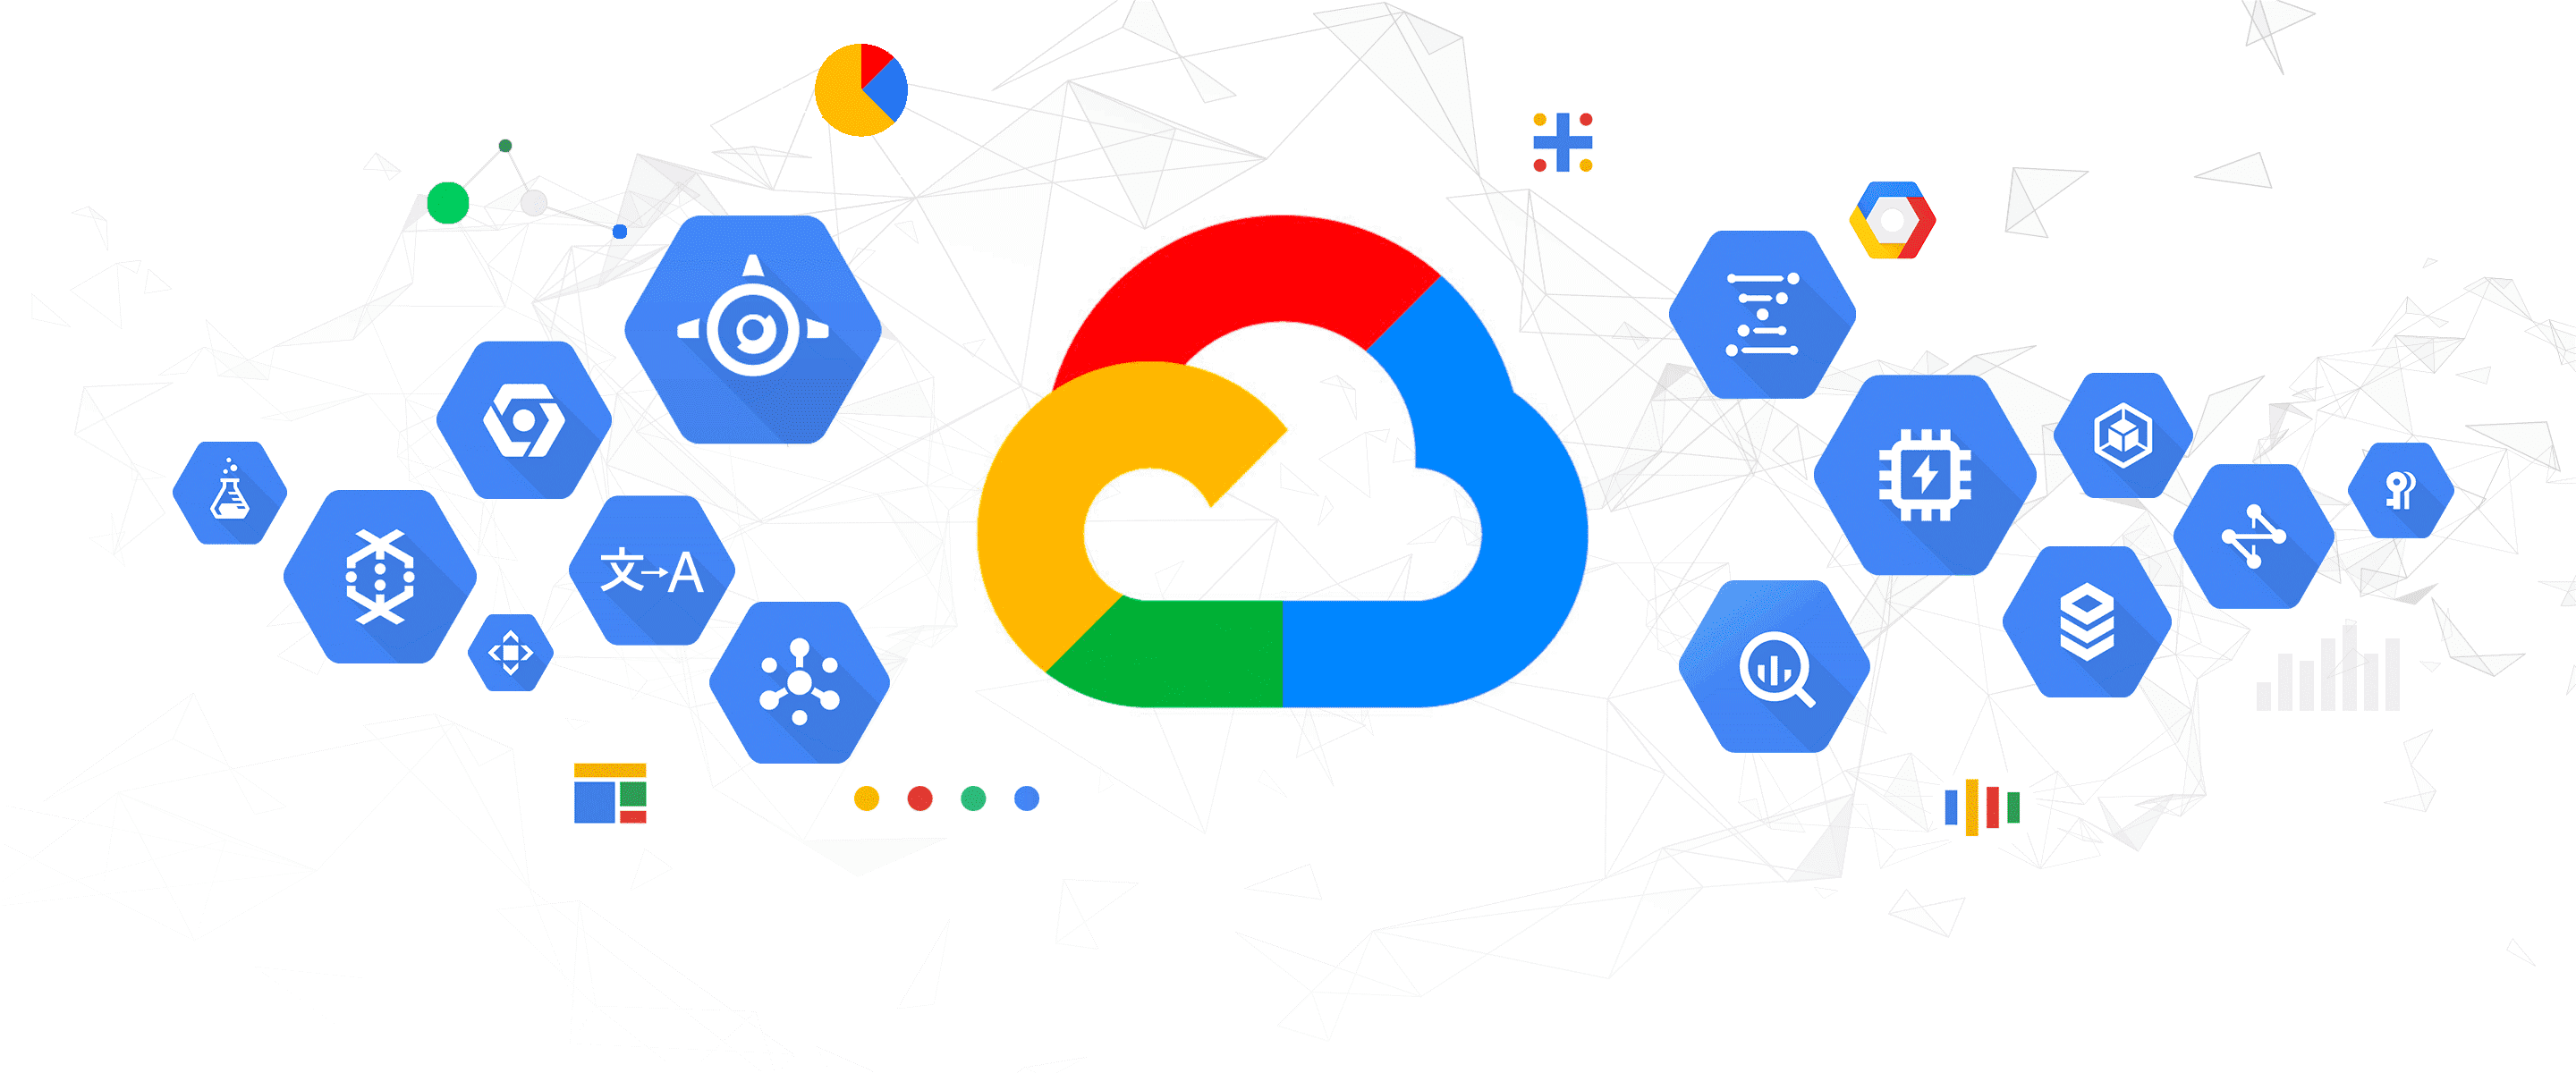 Google cloud Architecture